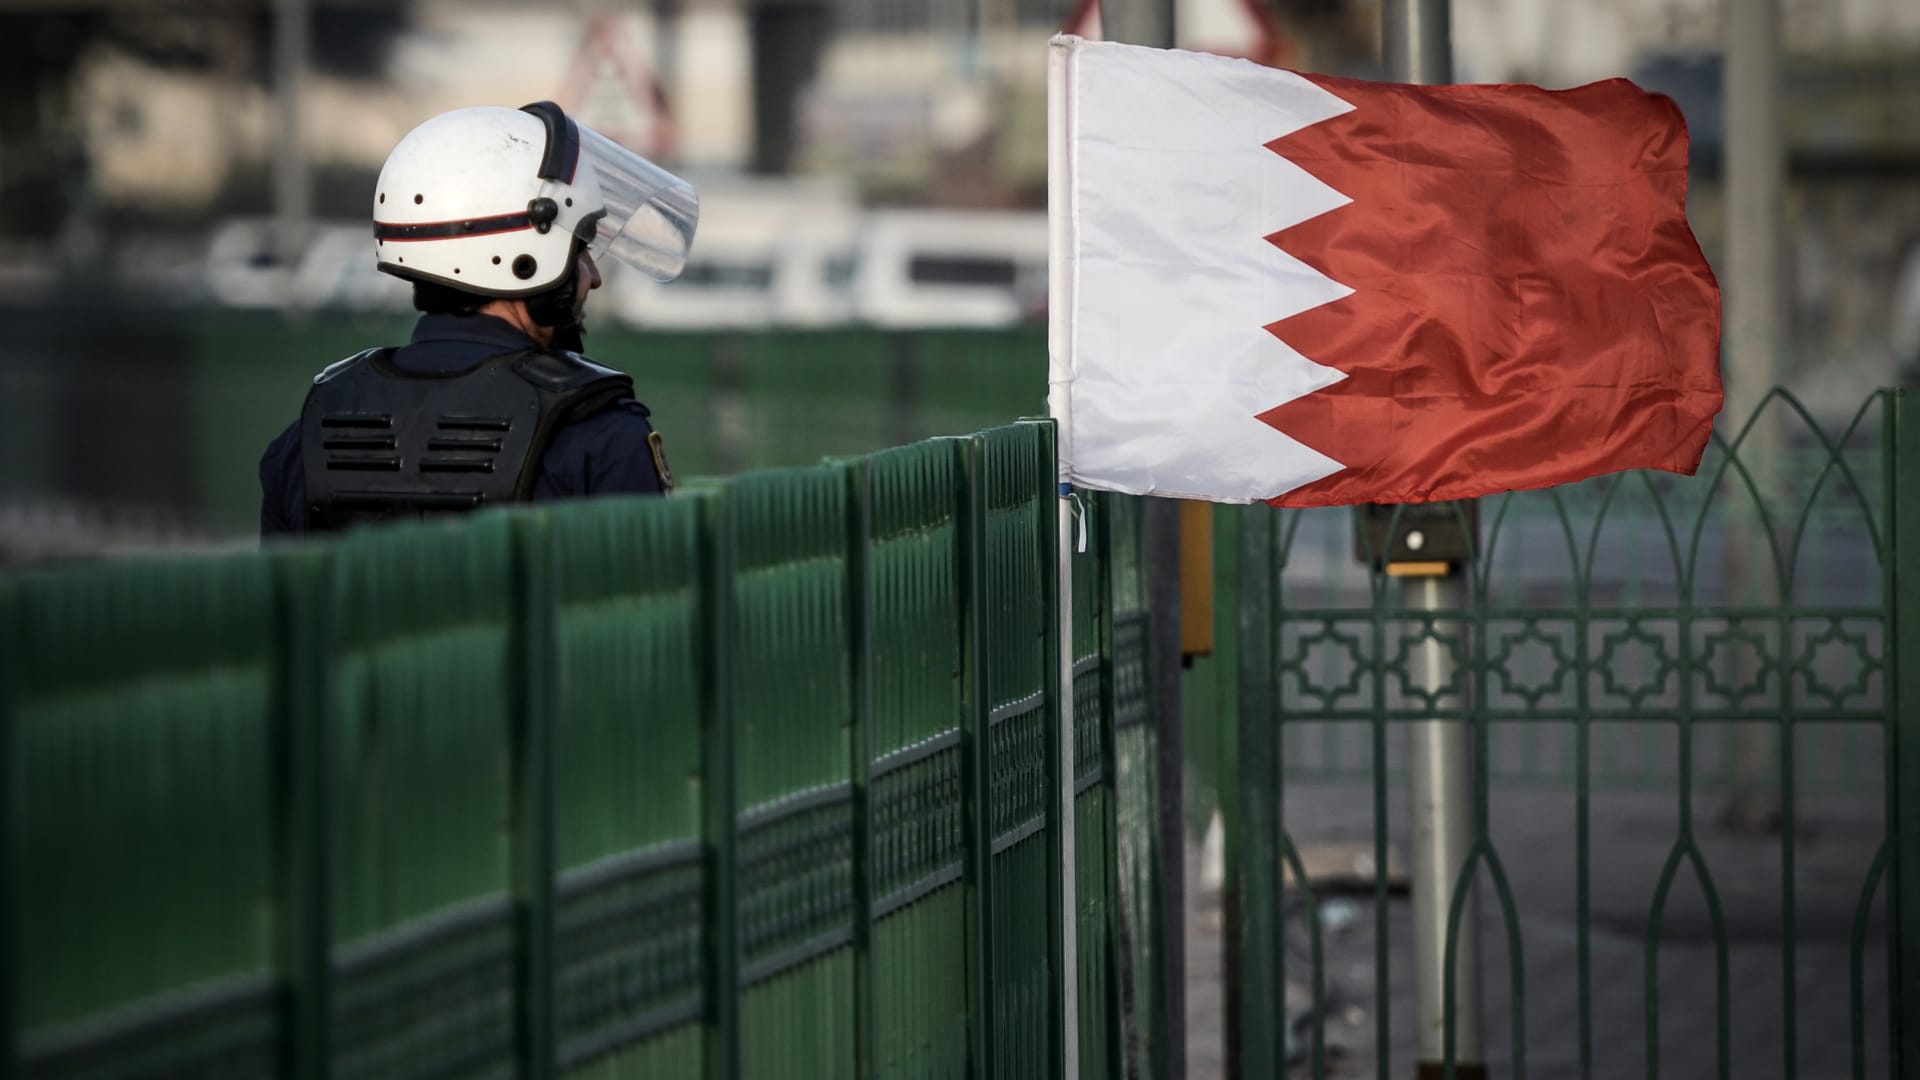 البحرين: حبس متهم نشر "أخبارا كاذبة" وشكك بقدرة السلطات على حفظ الأمن